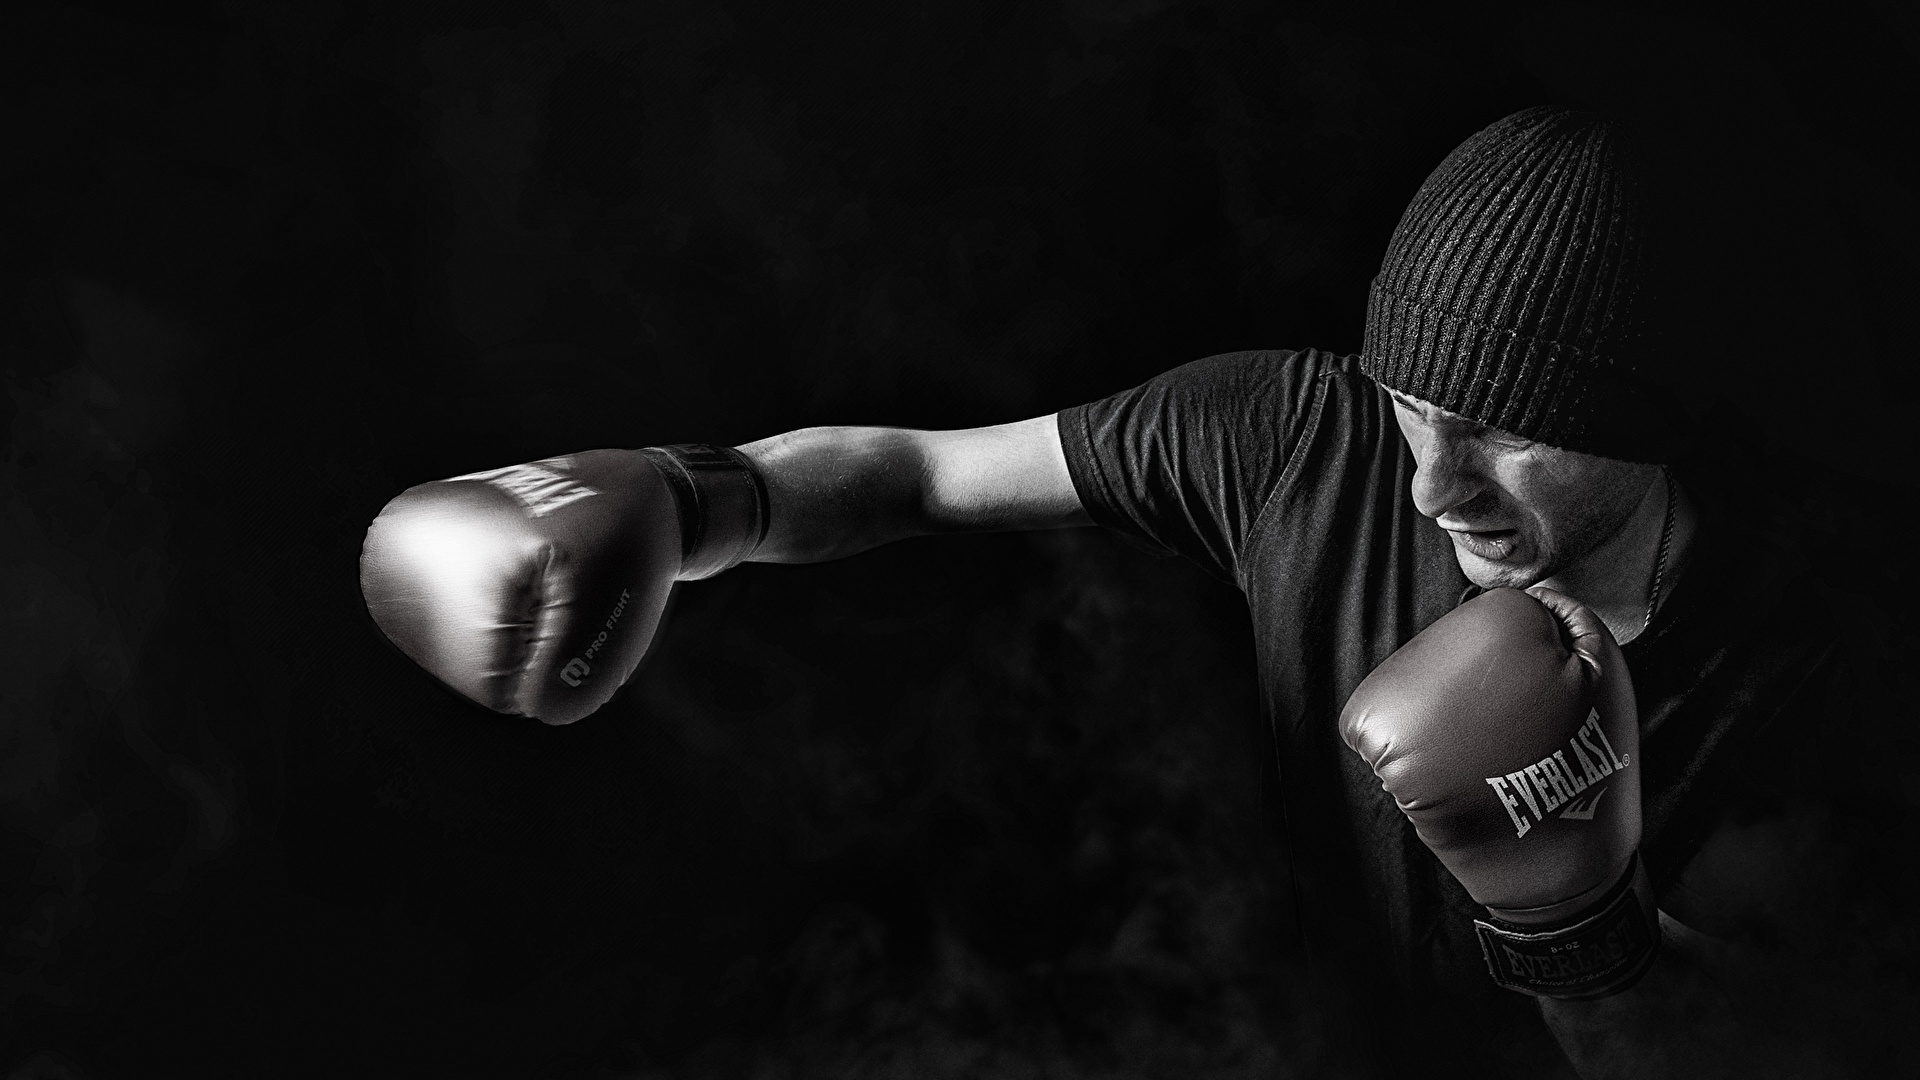 壁紙 19x1080 男性 ボクシング 黒色背景 白黒 暖かい帽子 手 手袋 パンチ スポーツ ダウンロード 写真